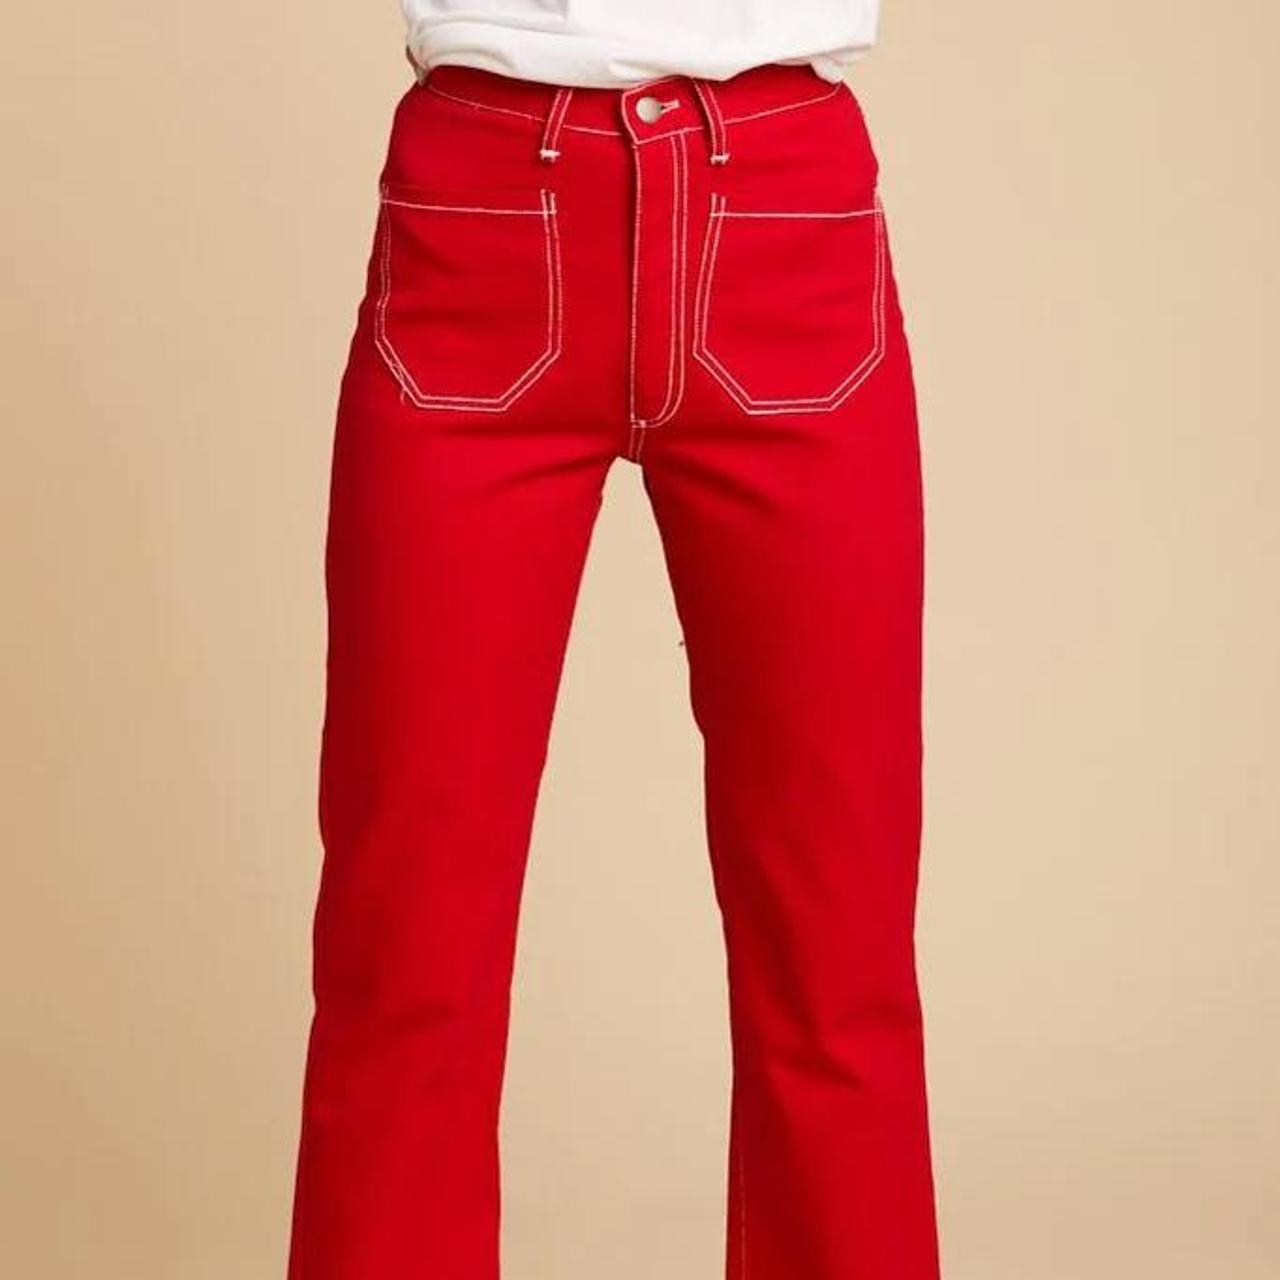 Lykke Wullf Women's Red Jeans